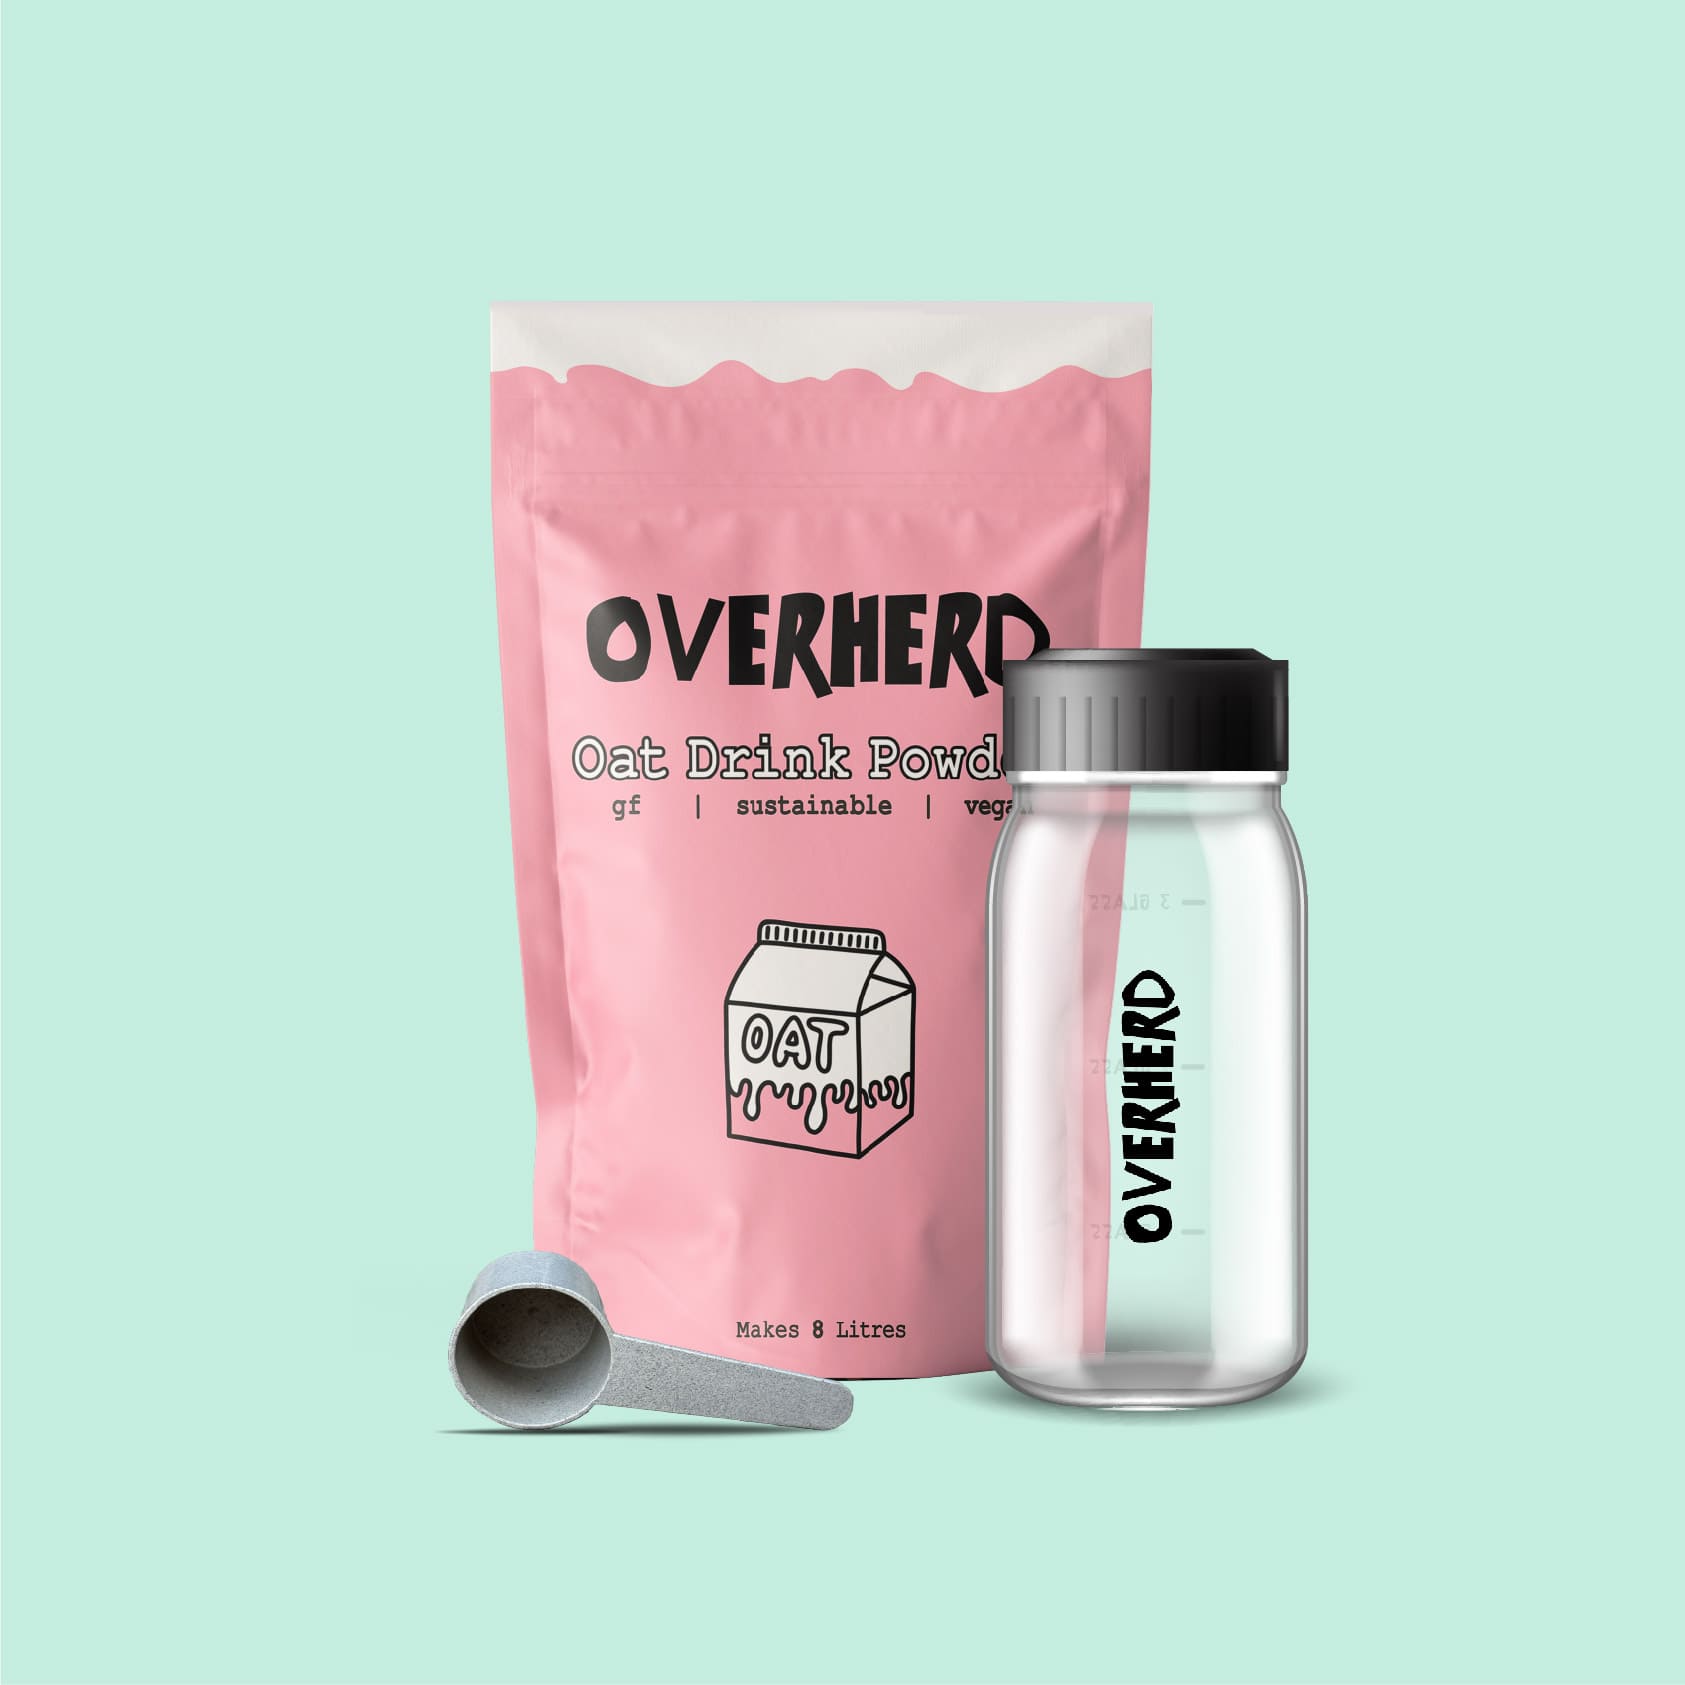 Overherd oat milk powder bundle